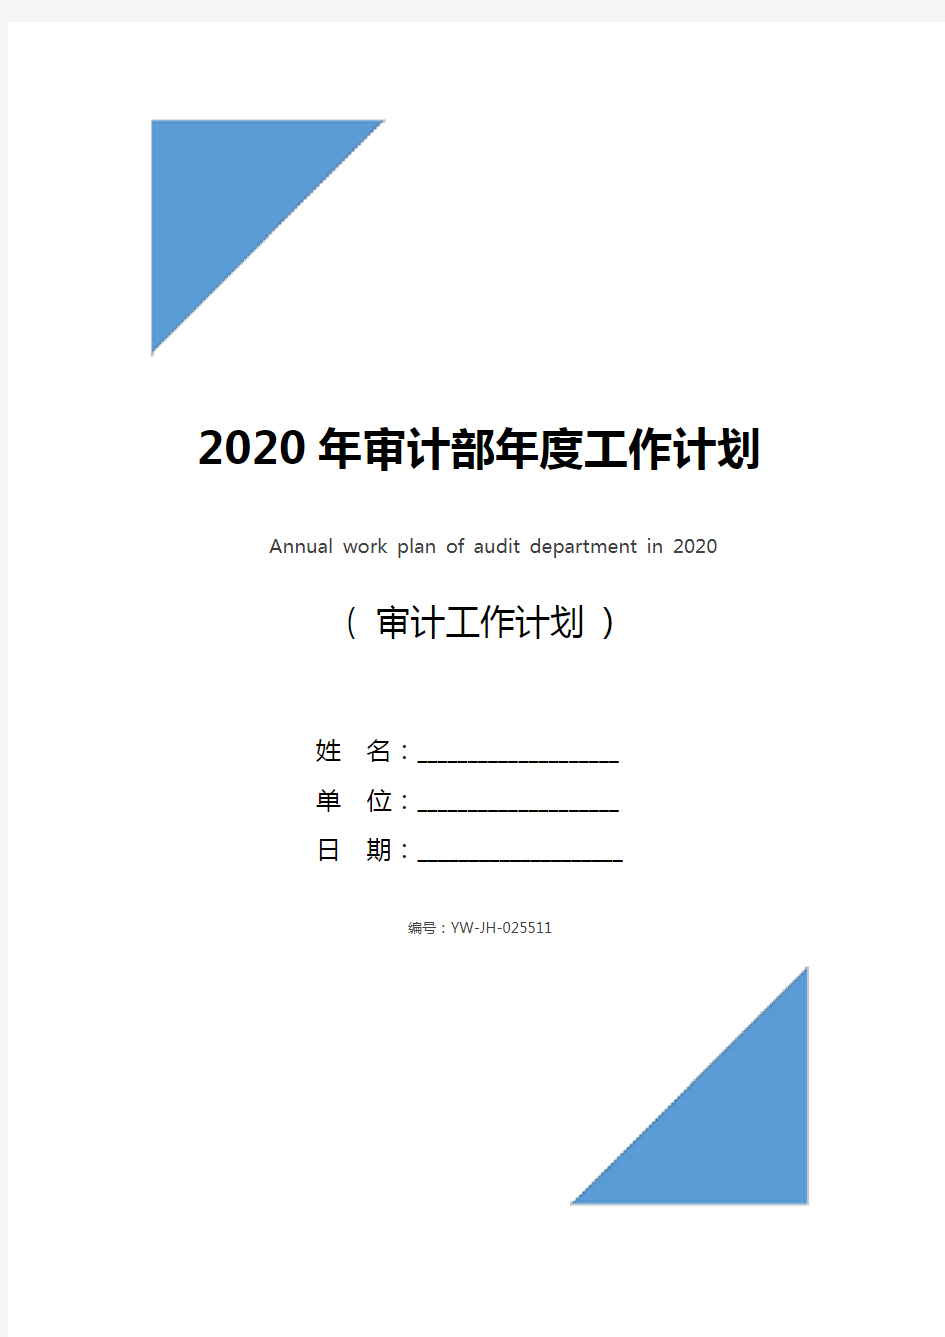 2020年审计部年度工作计划